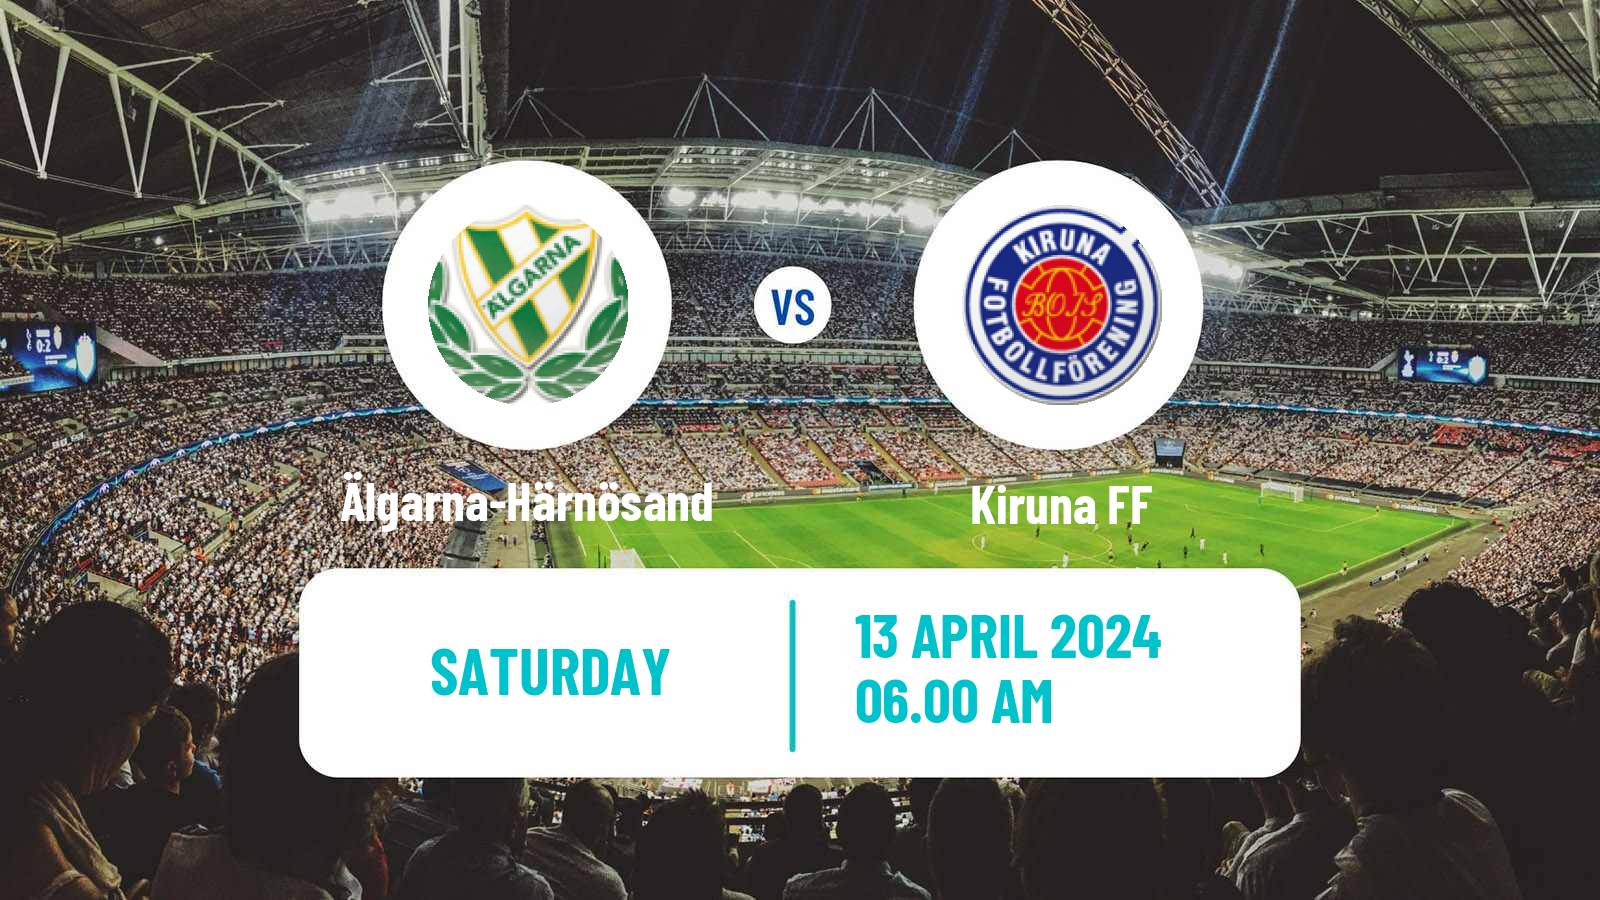 Soccer Swedish Division 2 - Norrland Älgarna-Härnösand - Kiruna